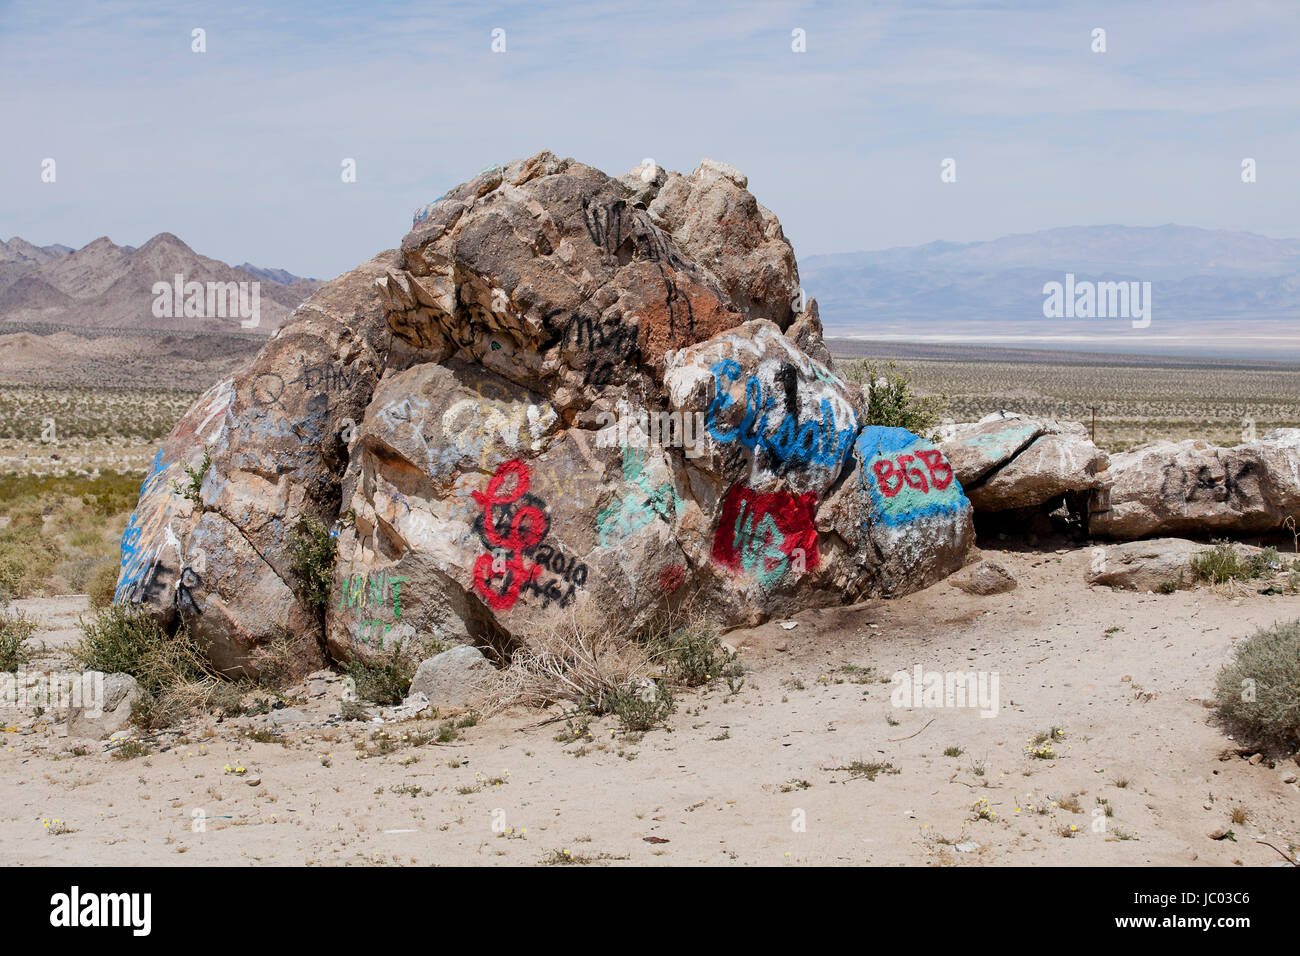 Graffiti verniciato a spruzzo sul boulder nel sud-ovest americano il paesaggio del deserto - Deserto Mojave, California USA Foto Stock